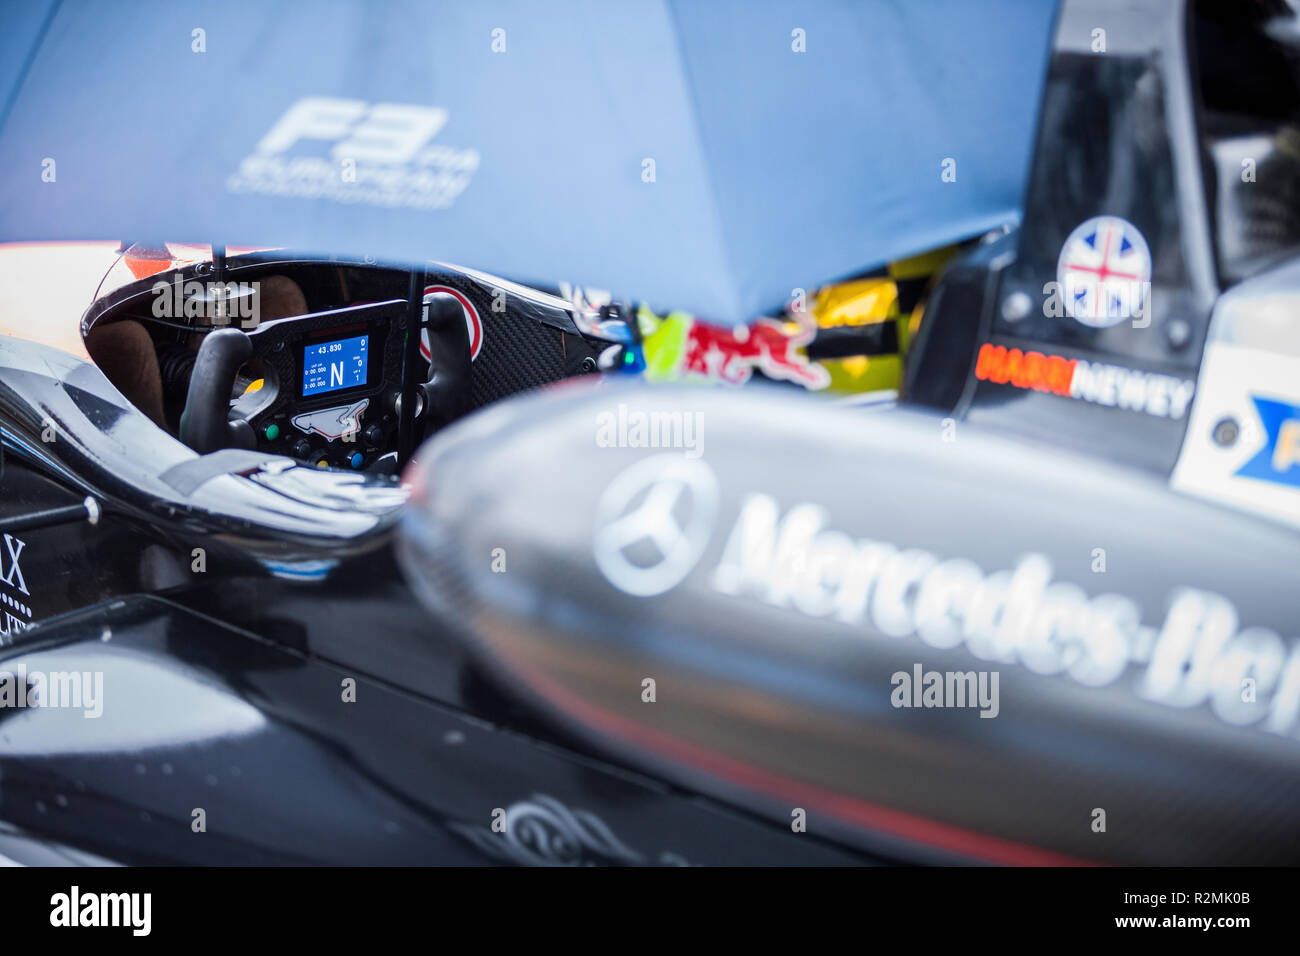 Formula 3 racer nel suo pozzetto, close-up Foto Stock